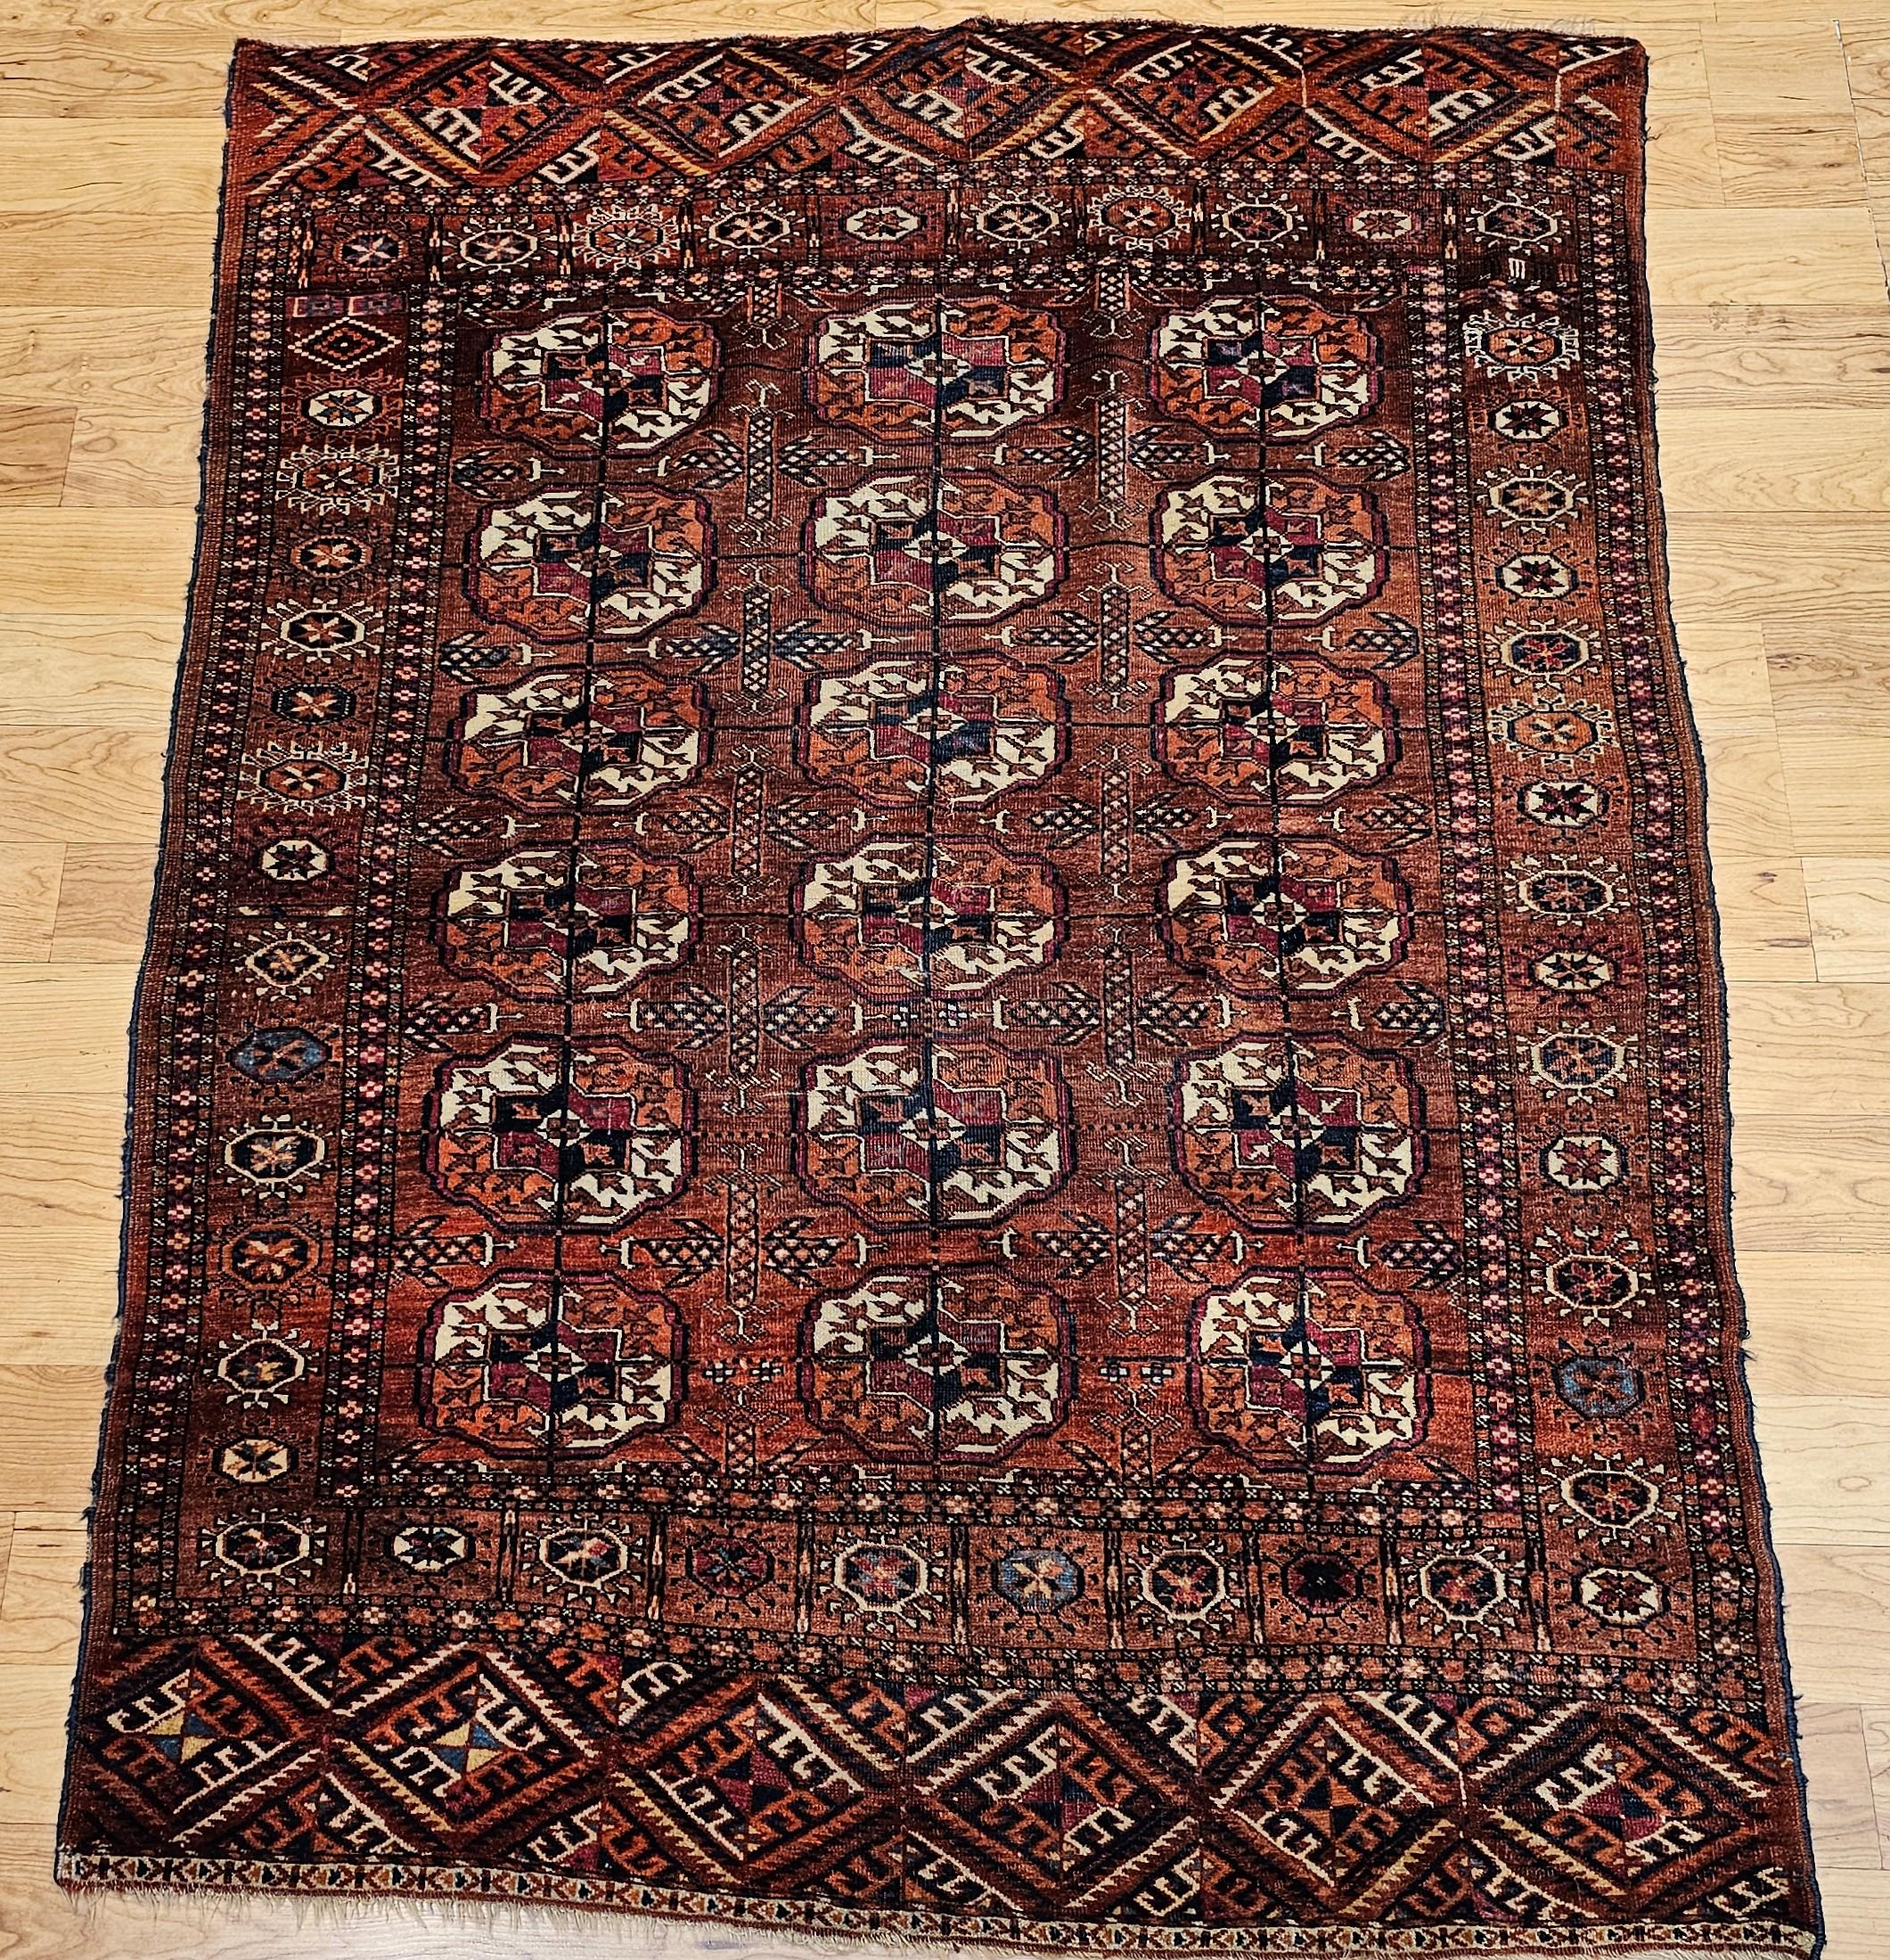 Vintage turkmenischen Tekke Bereich Teppich in einem allover kleinen Medaillon-Muster aus den späten 1800er Jahren.  Der Teppich hat eine schöne und anmutige rote Hintergrundfarbe.  Die Medaillons sind in Karminrot, Marineblau, Elfenbein und Rost